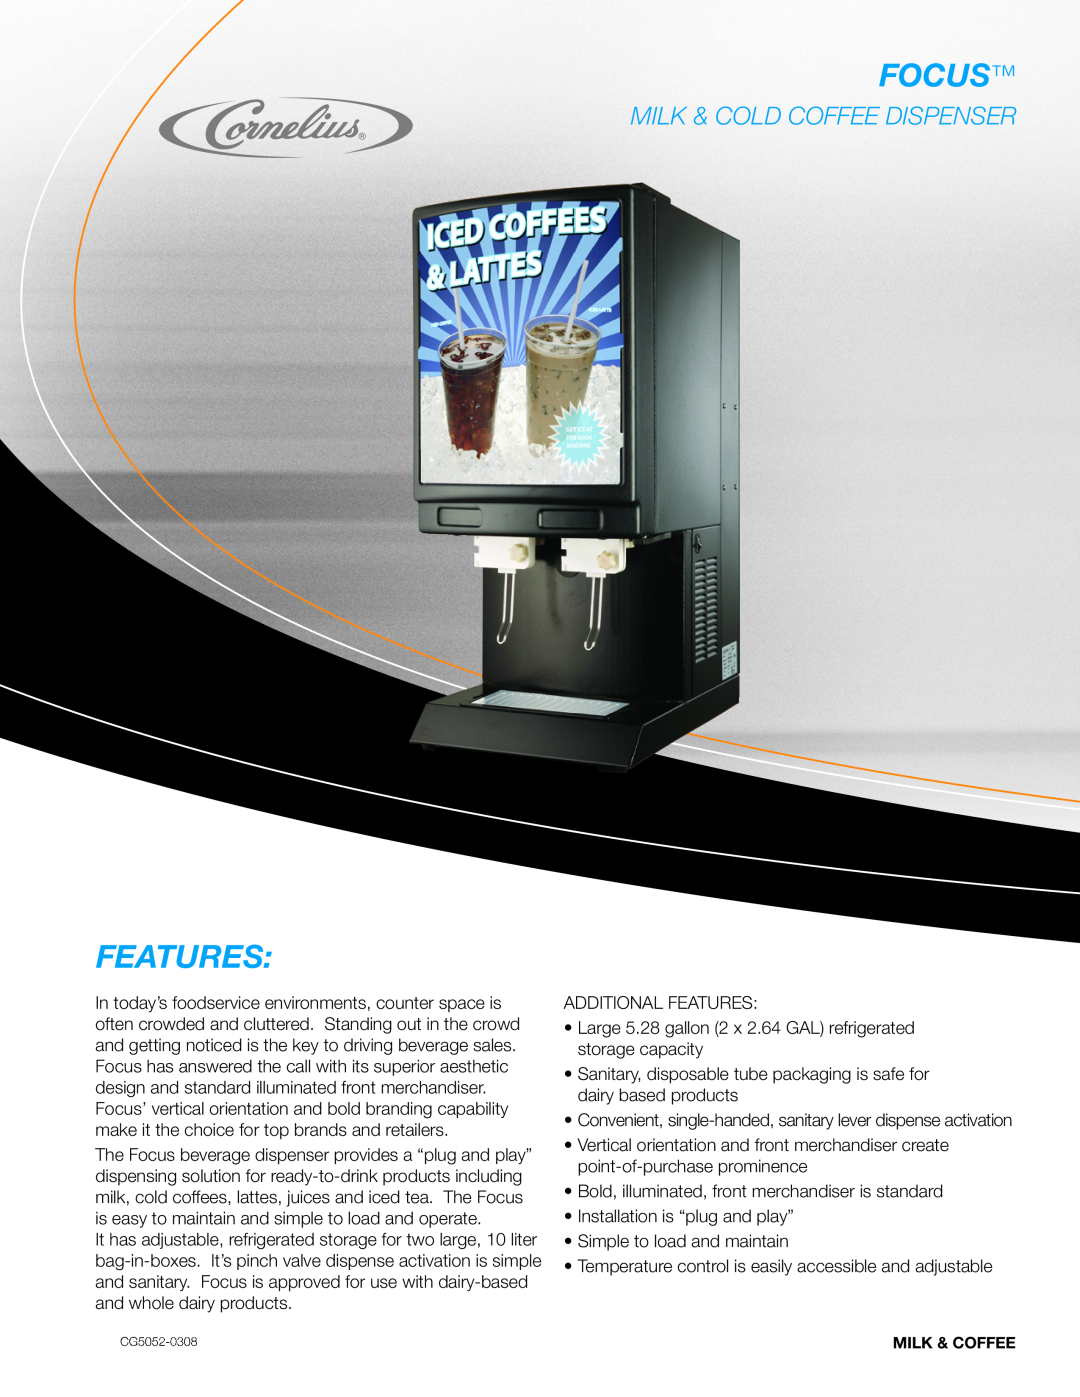 Cornelius CG5052-0308 manual Focus, Features, Milk & Cold Coffee Dispenser 